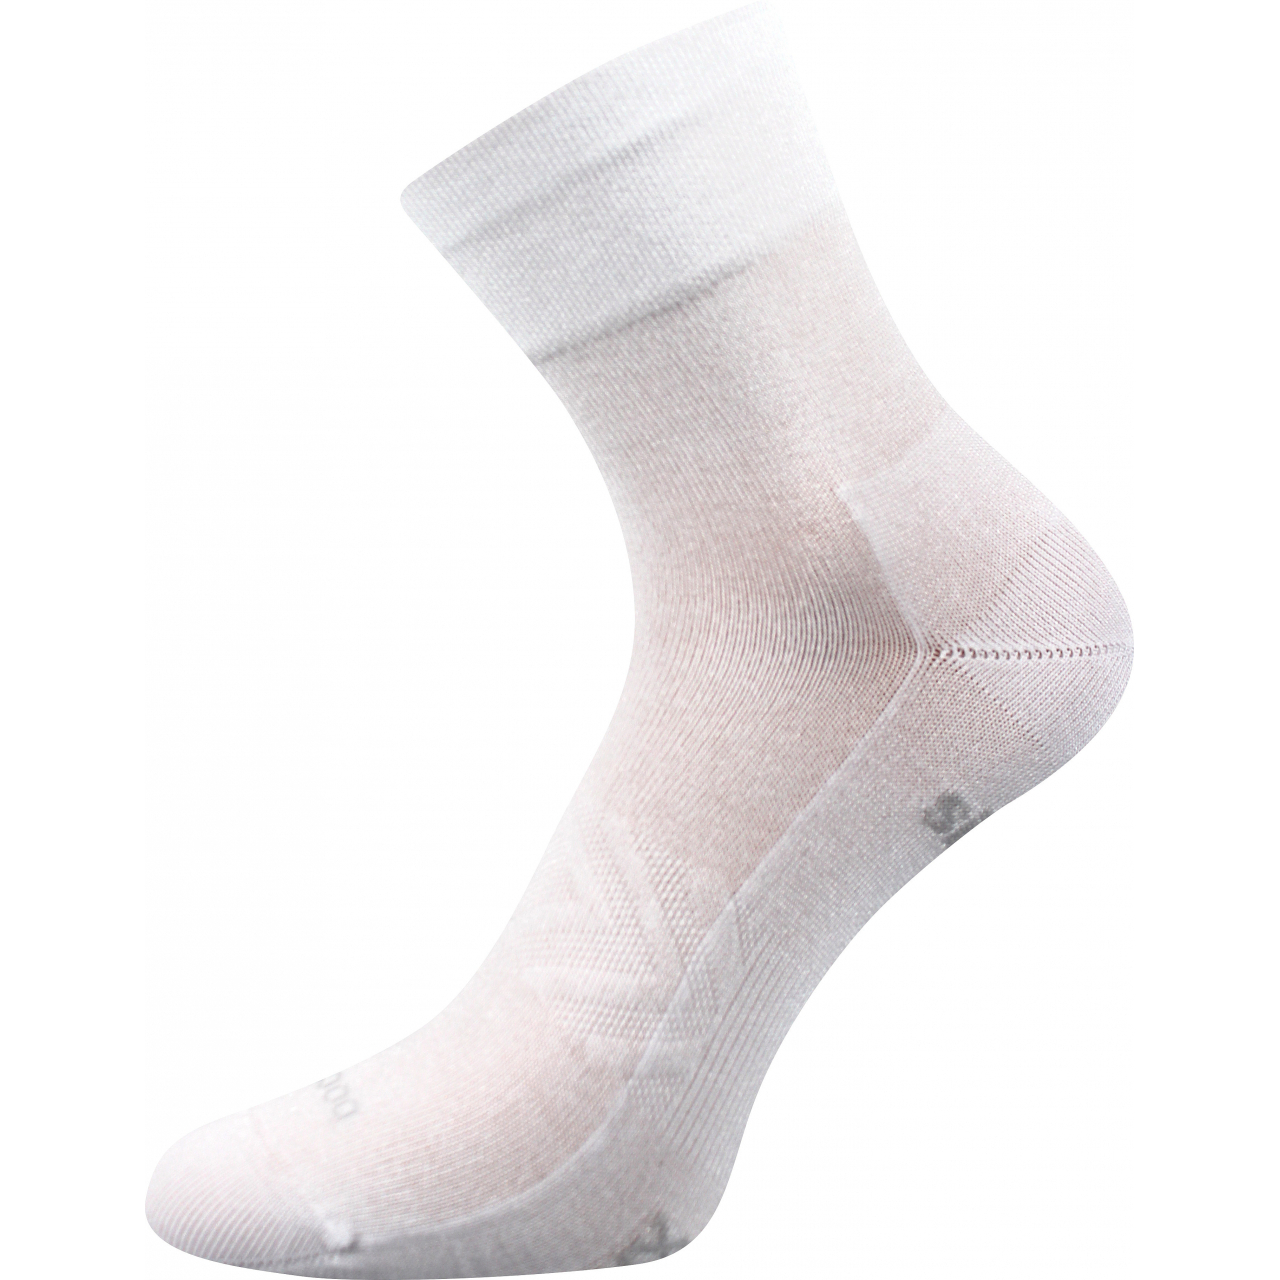 Ponožky sportovní unisex Voxx Baeron - bílé, 47-50